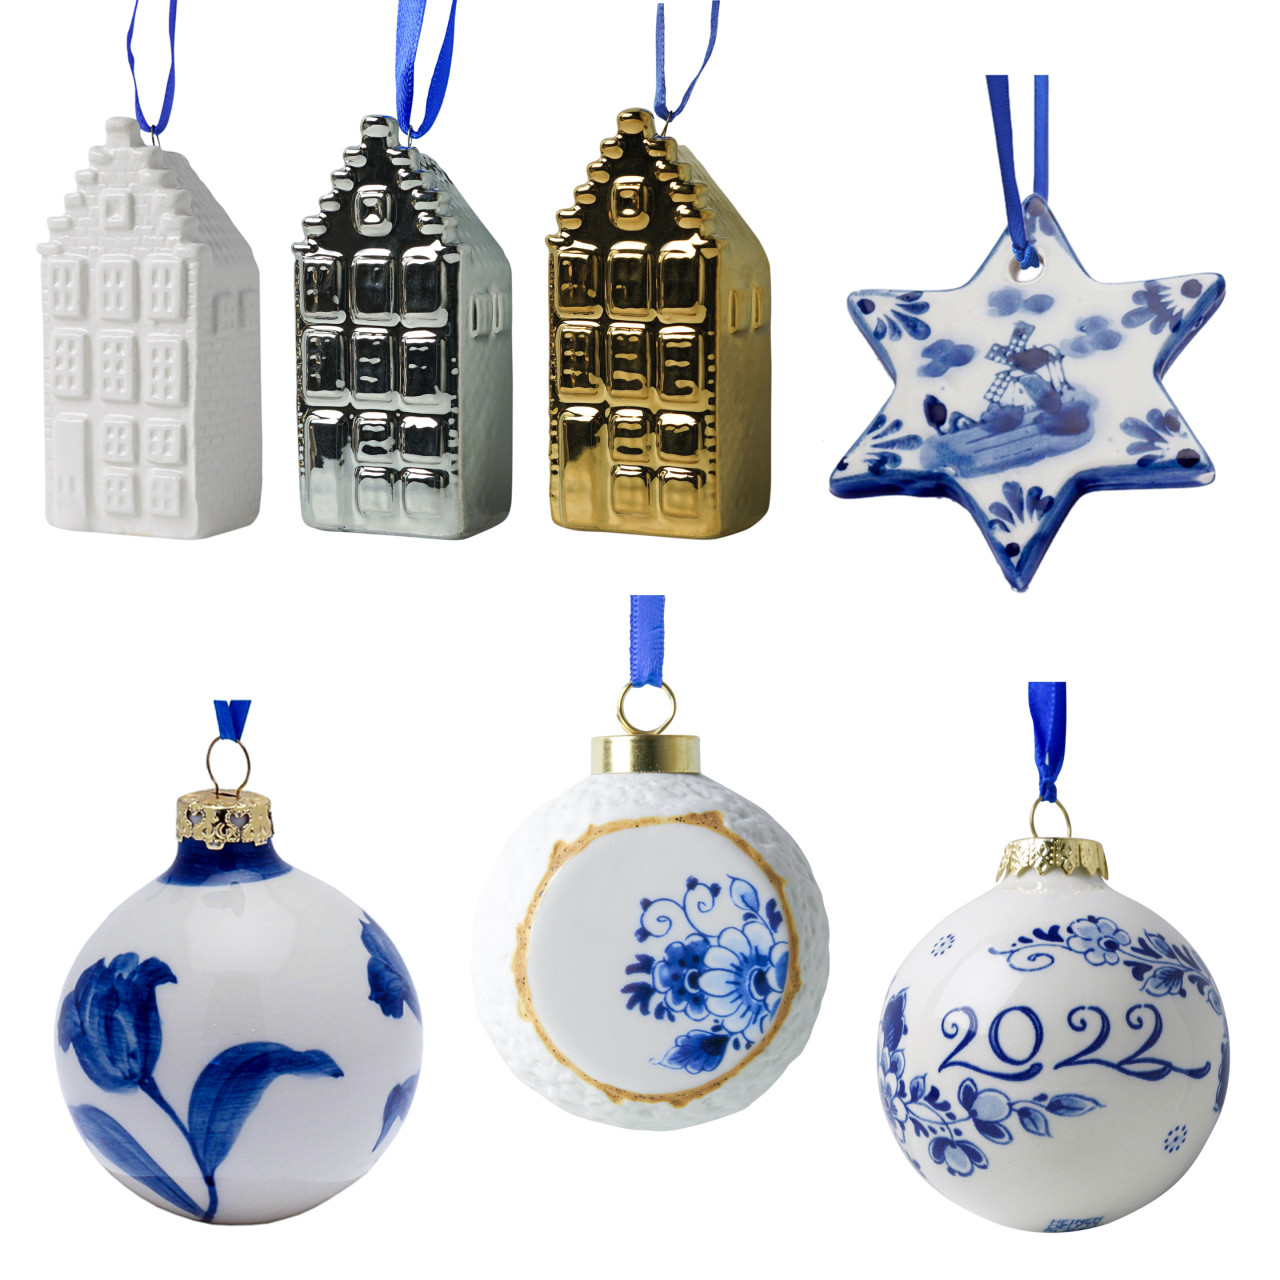 vacht Wiskunde Lao Kerstornamenten set Delfts blauw kopen? » Heinen Delfts Blauw